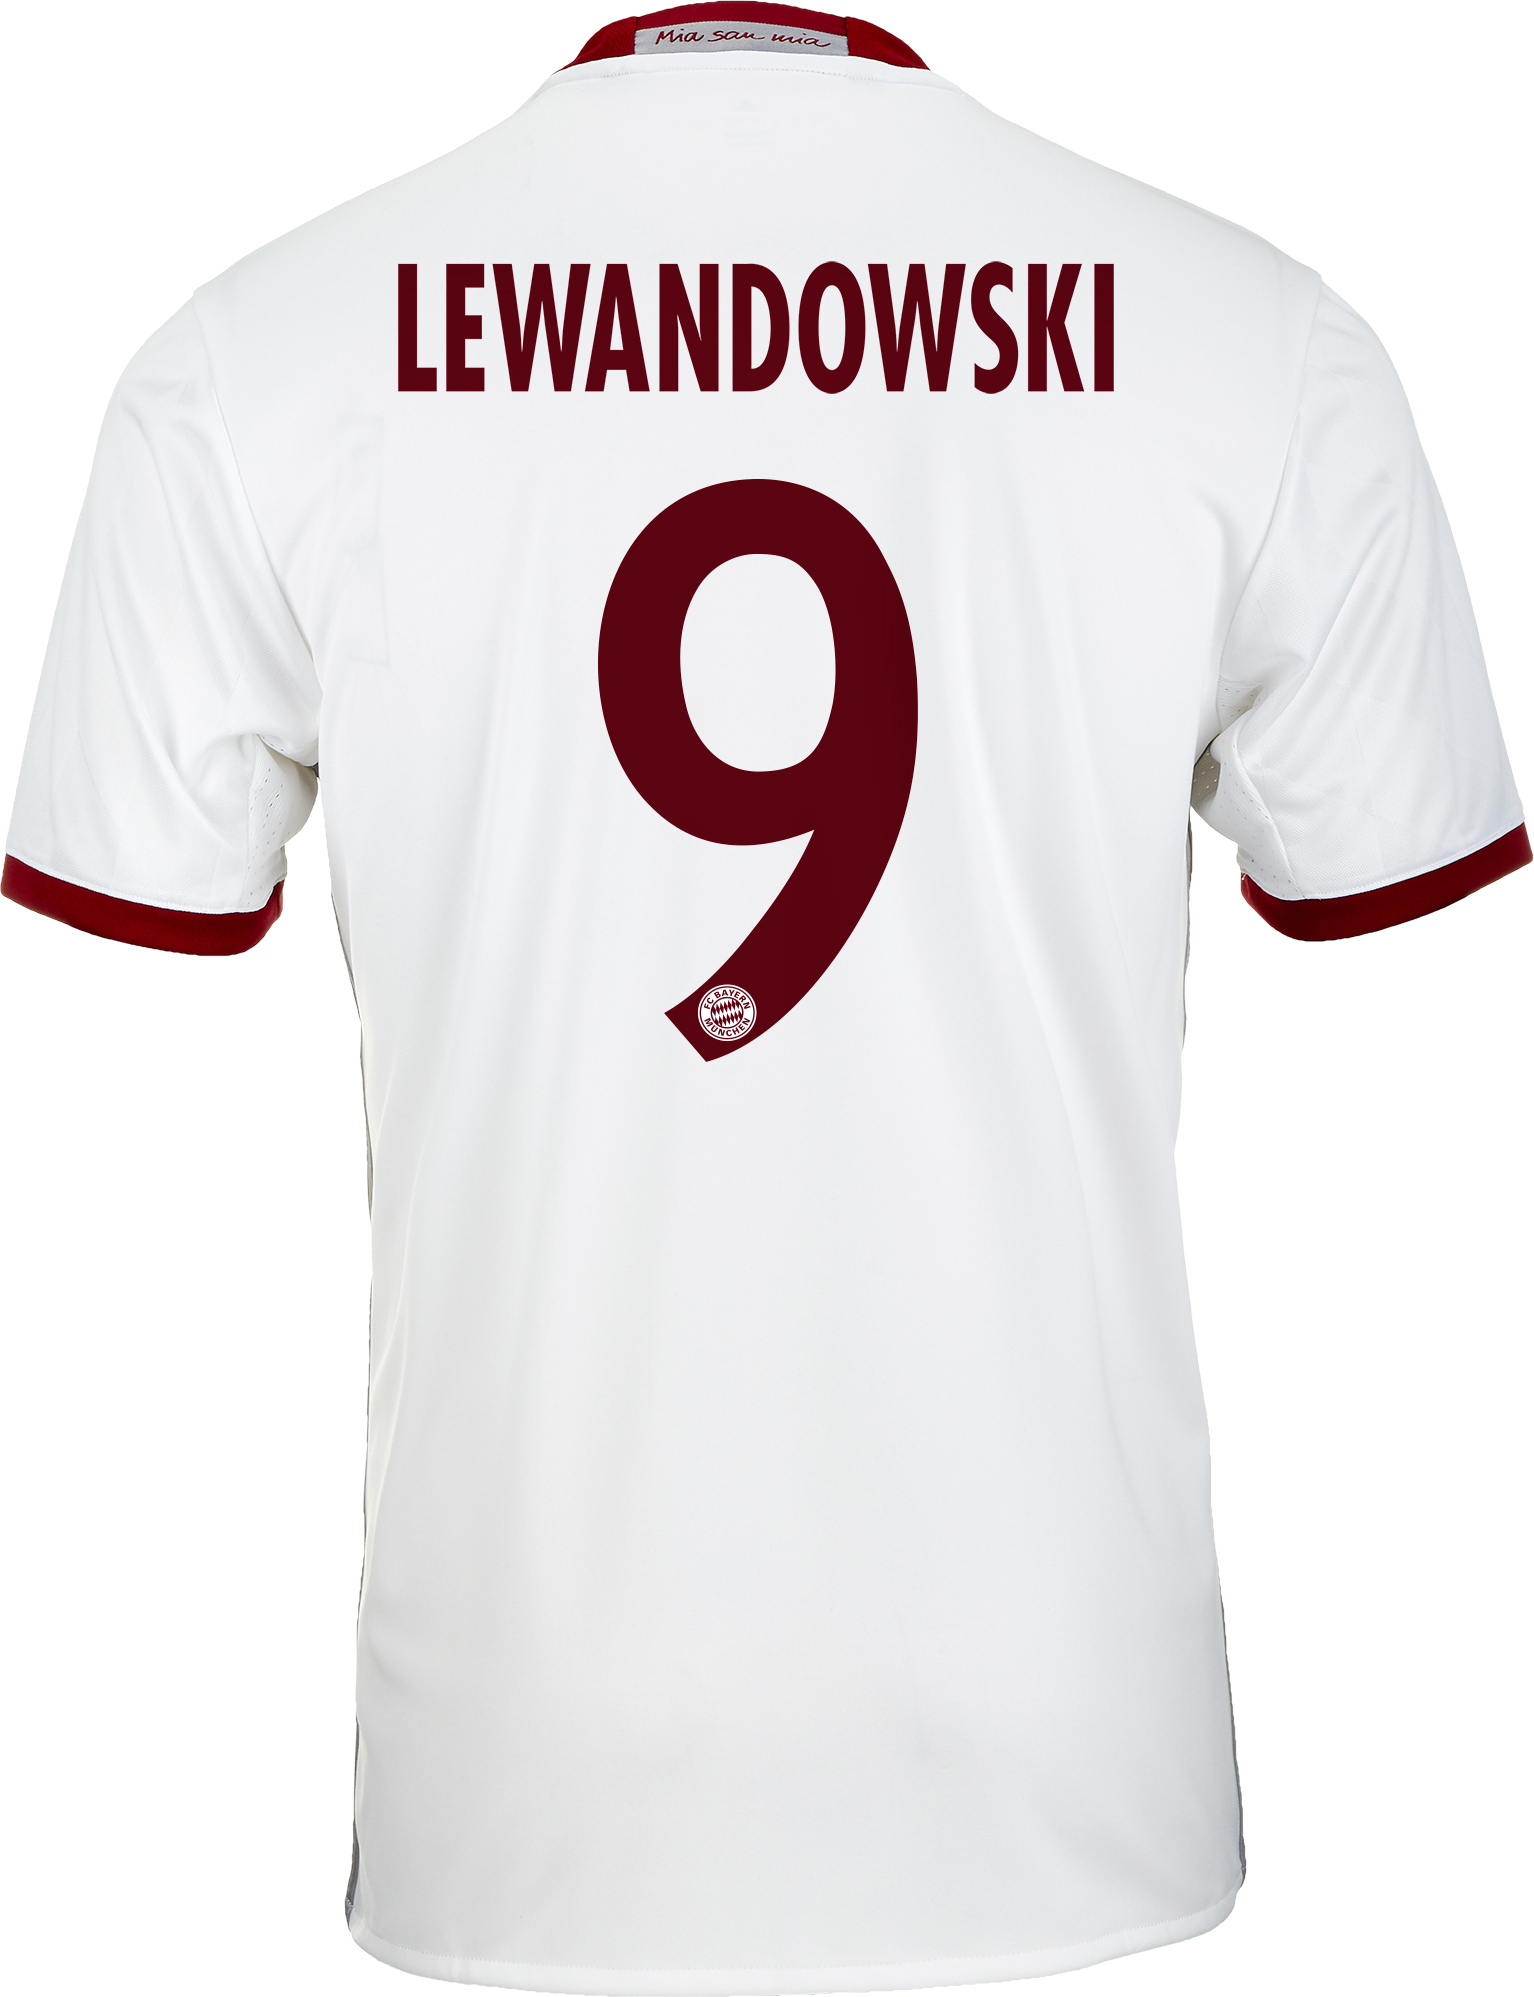 bayern lewandowski jersey